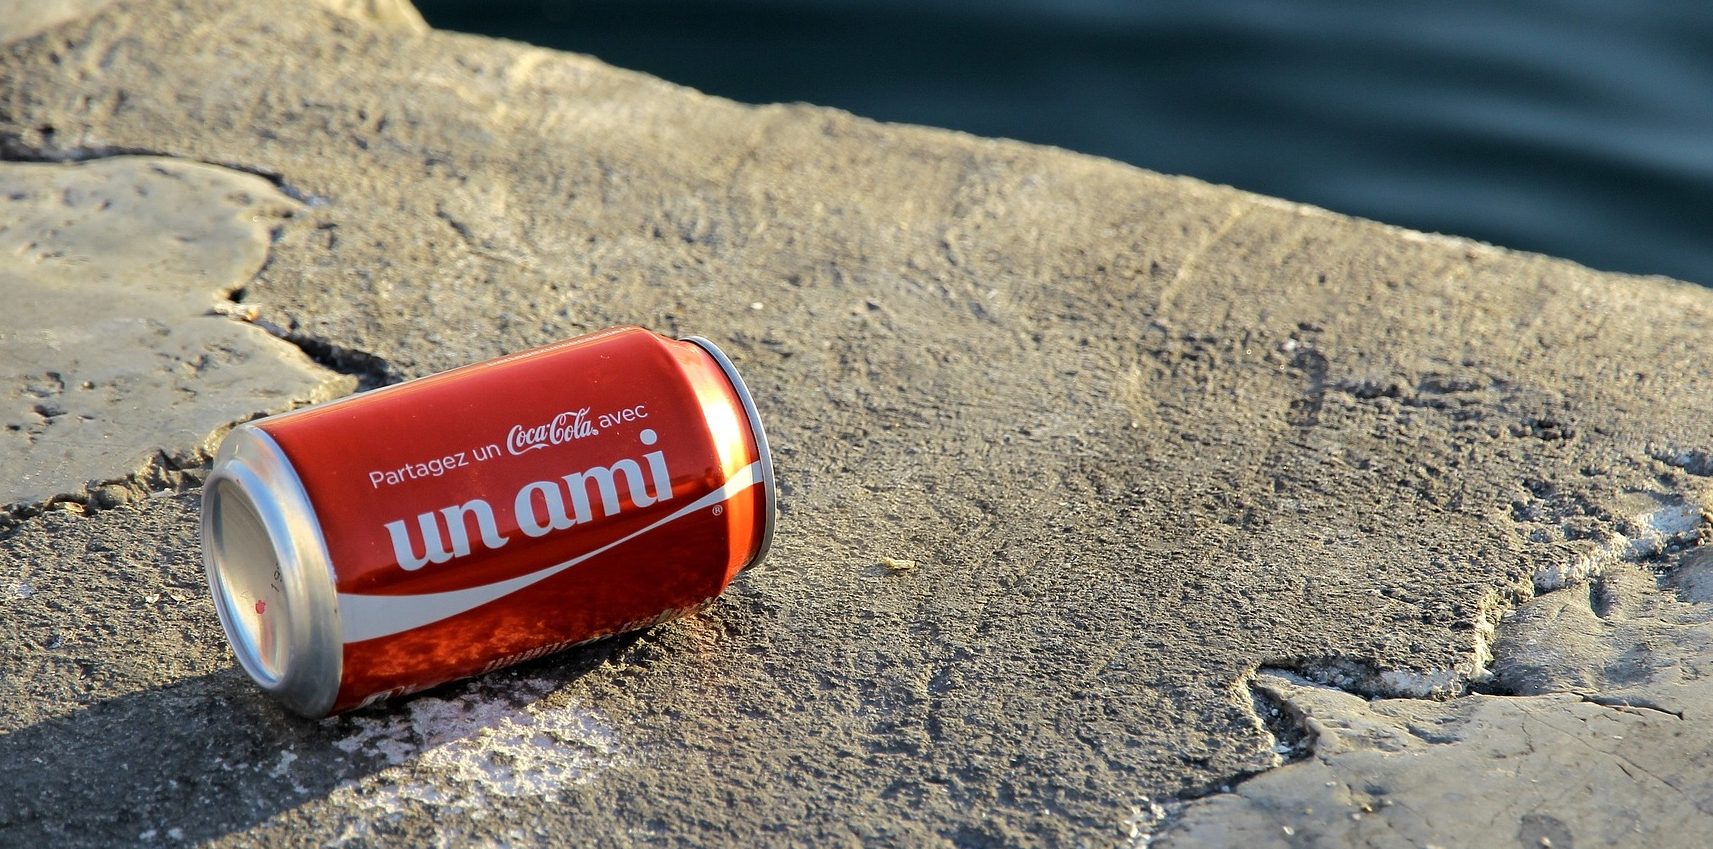 Cola ist eines der beliebtesten Softdrinks (Bild:Pixabay/Nouchkac)